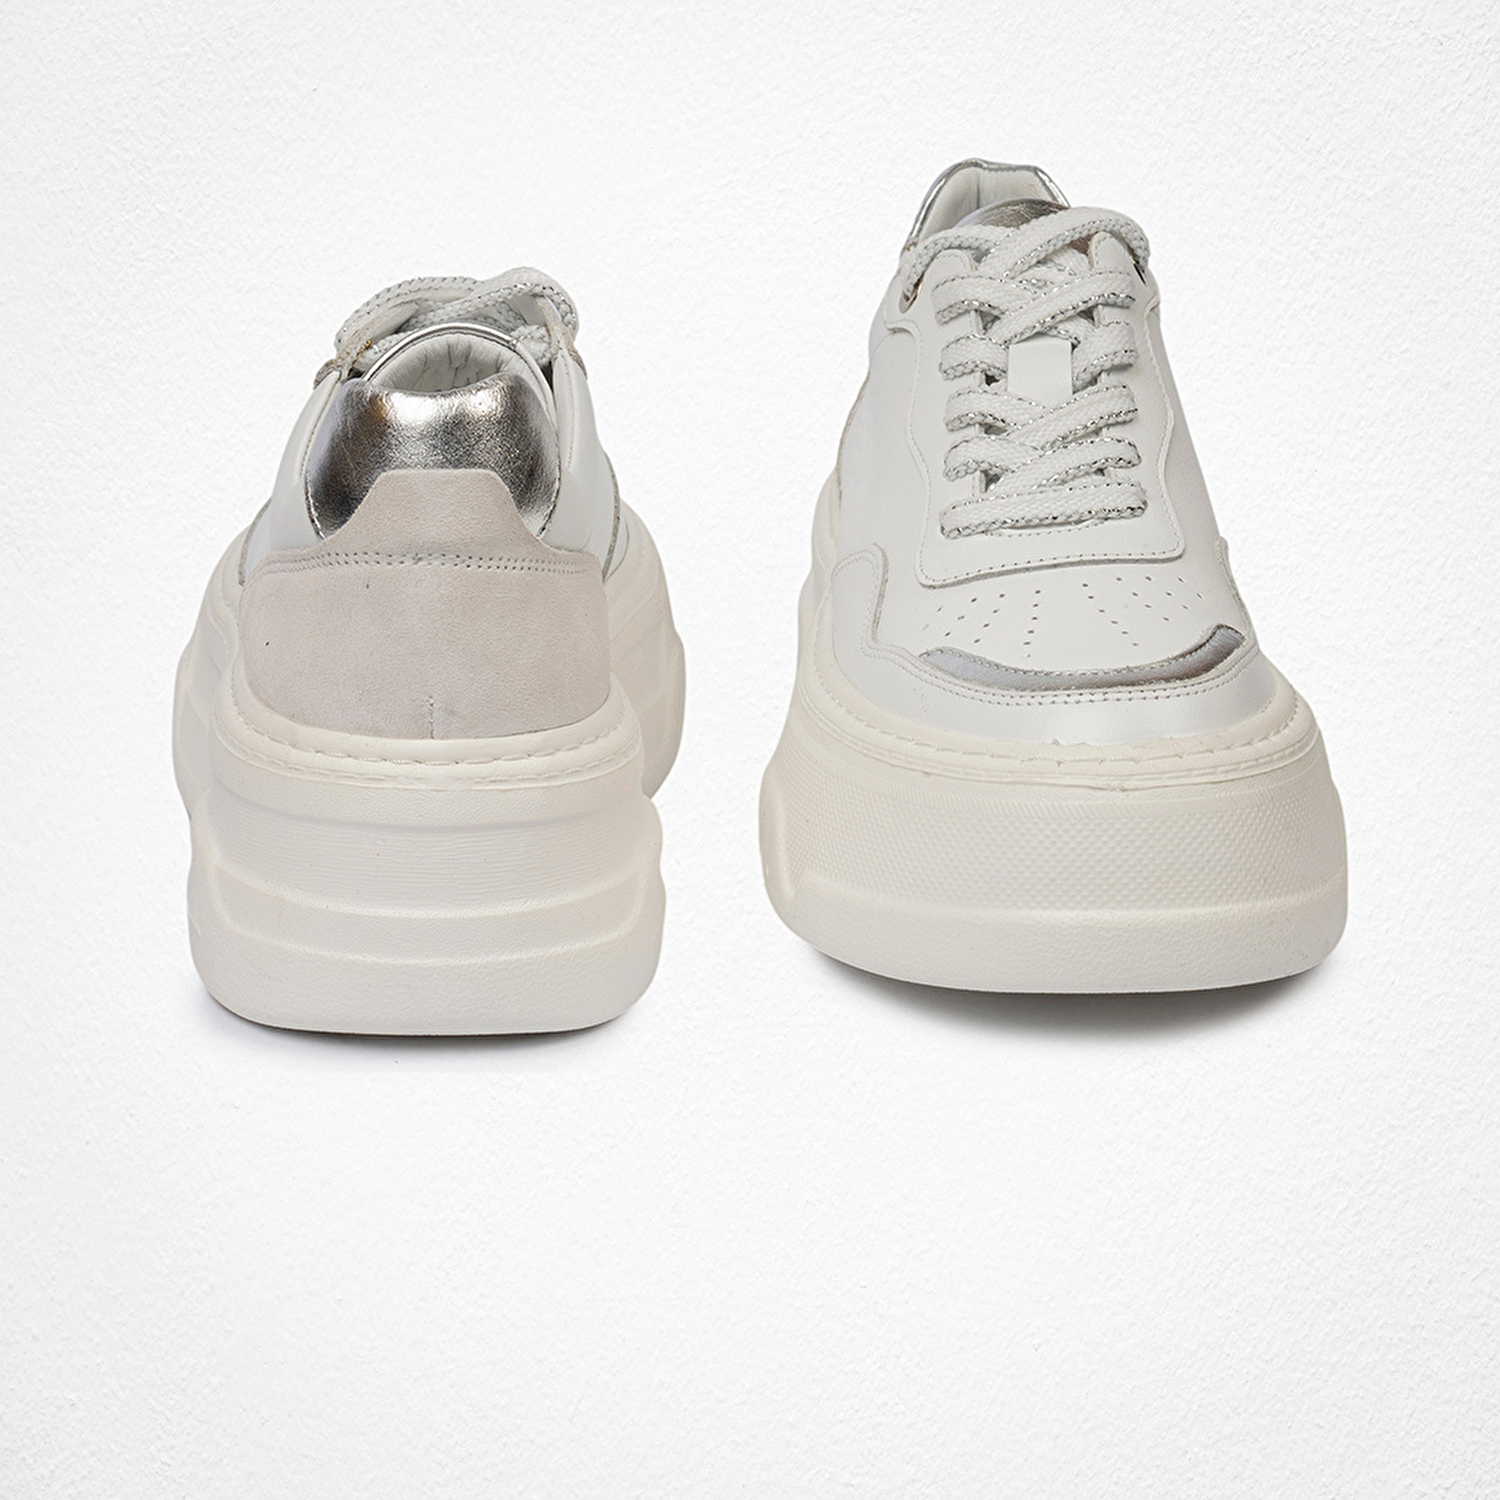 Kadın Beyaz Gümüş Sneaker Ayakkabı 4Y2SA59041-7